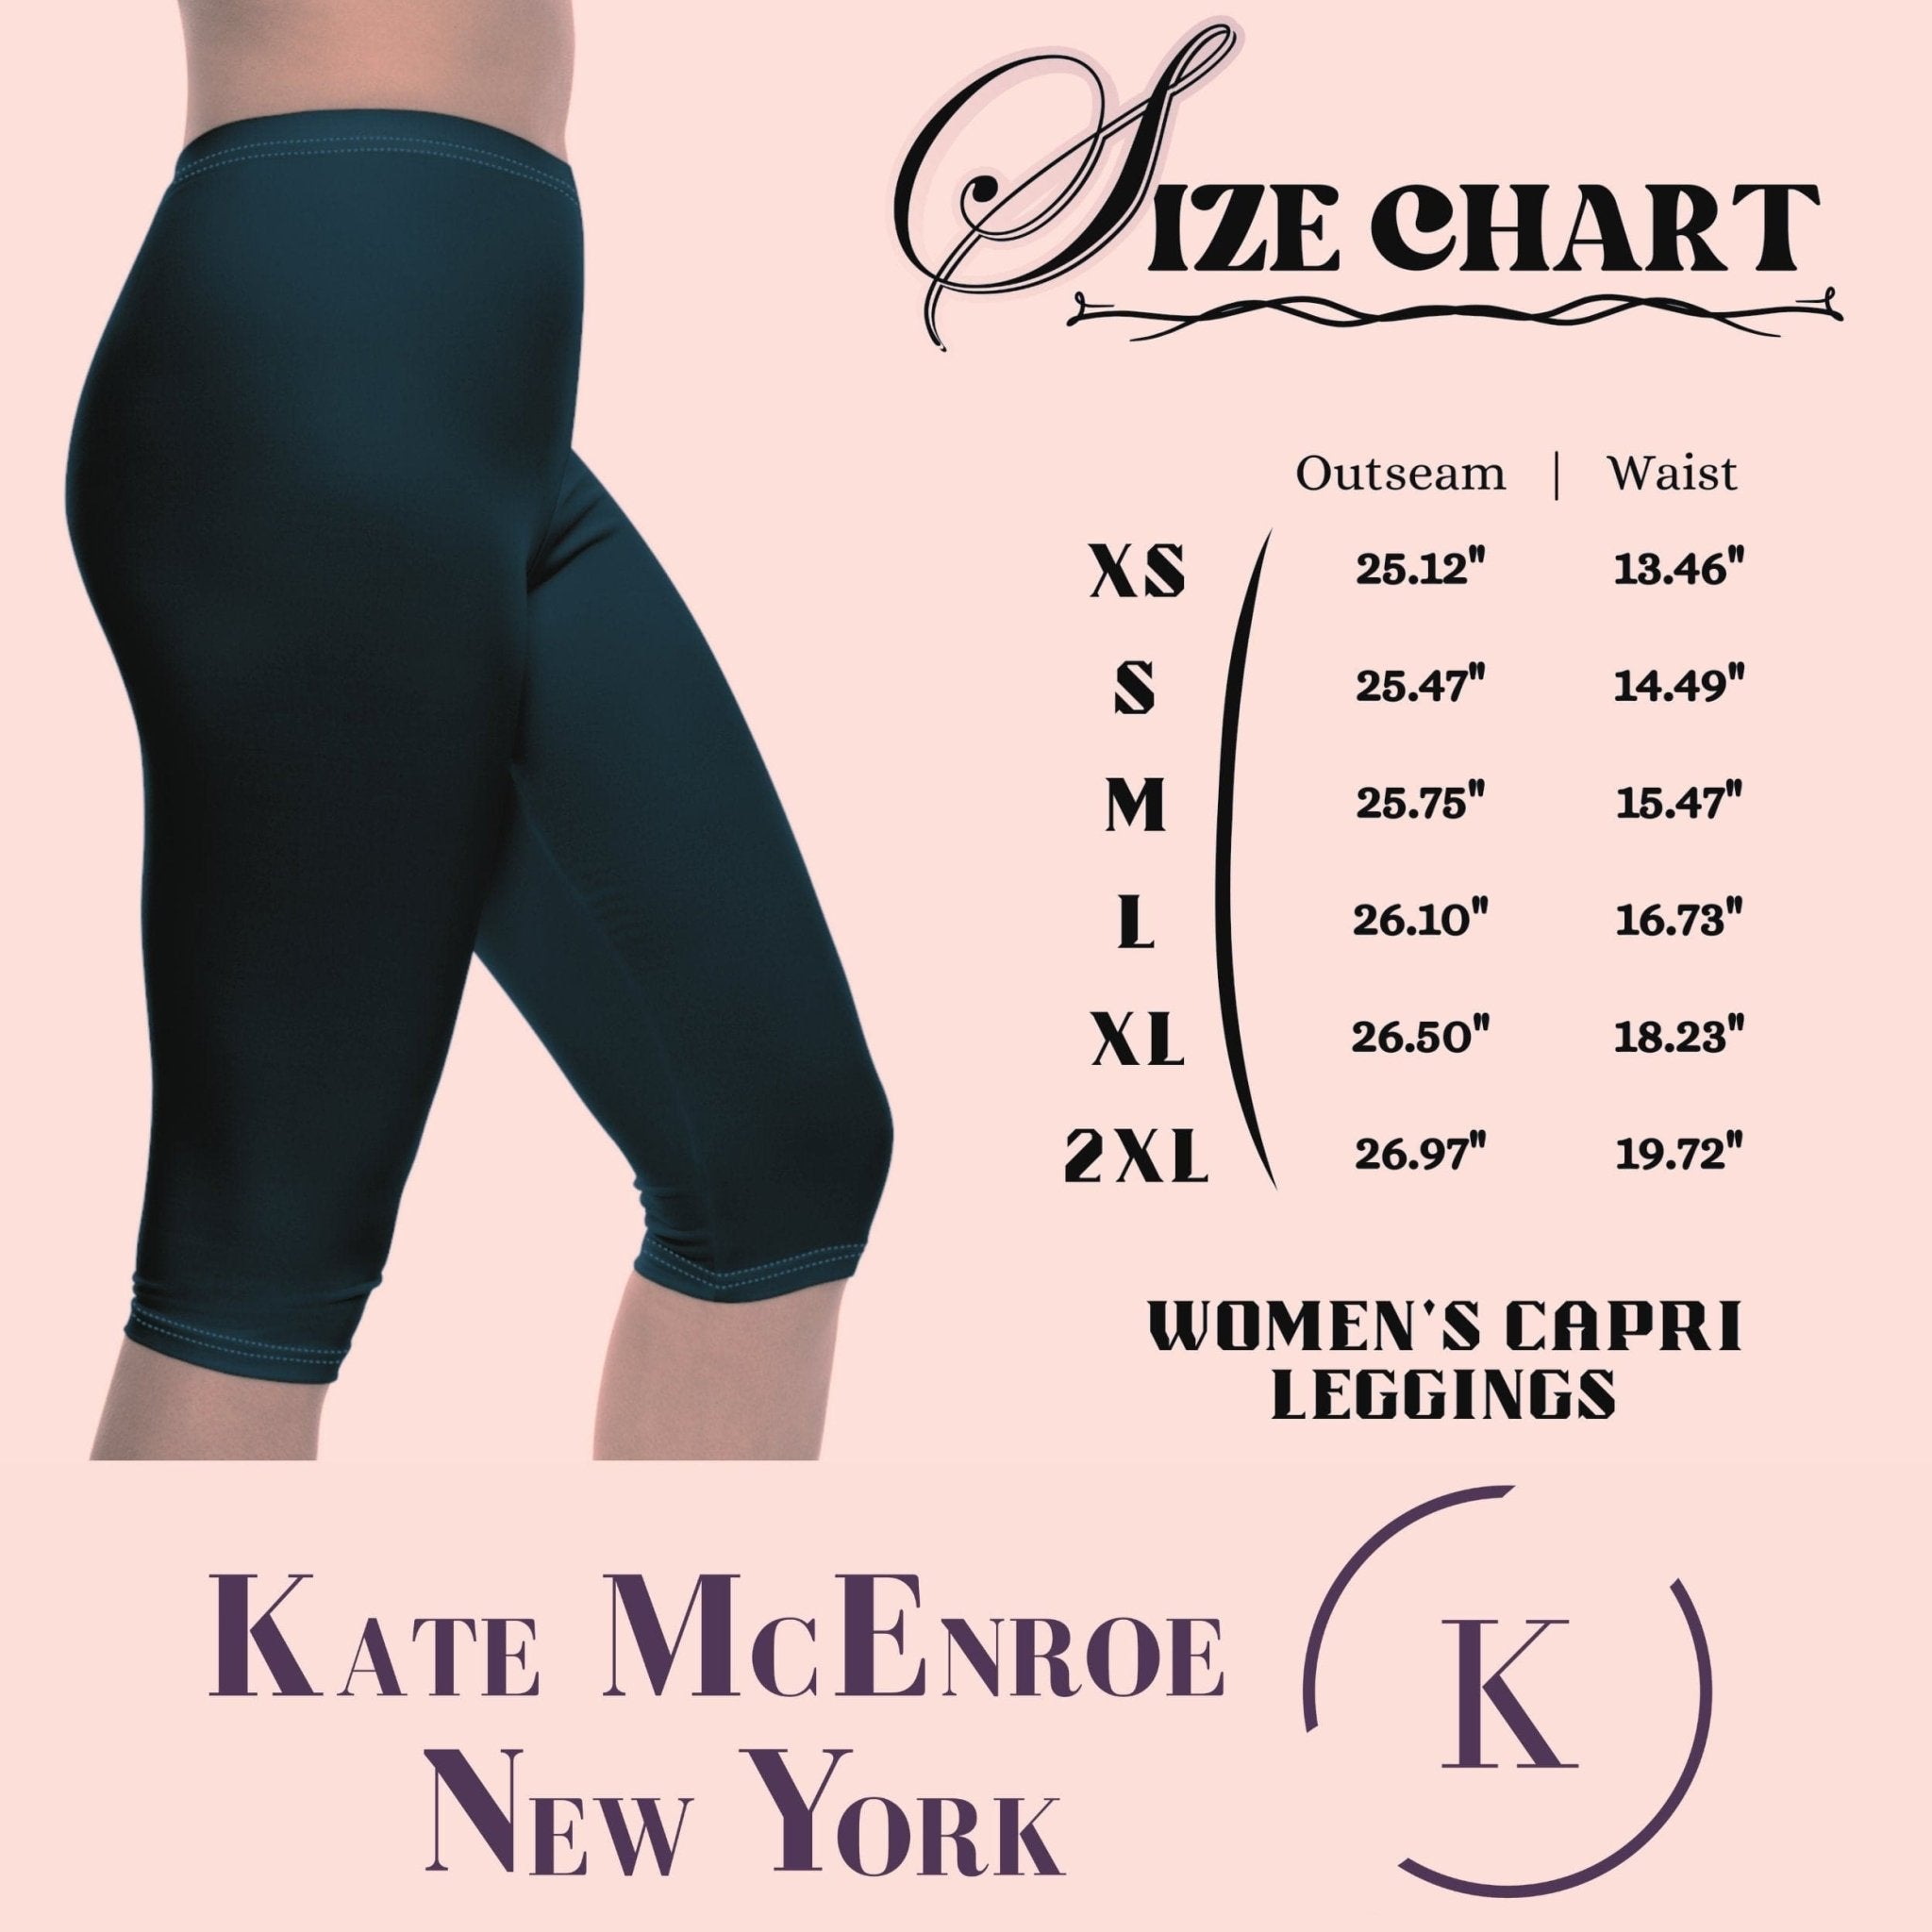 Kate McEnroe New York Groovy Flower Power 70s Psychedelic Swirl Skinny Fit Womens Capri LeggingsLeggings70441759164963377695